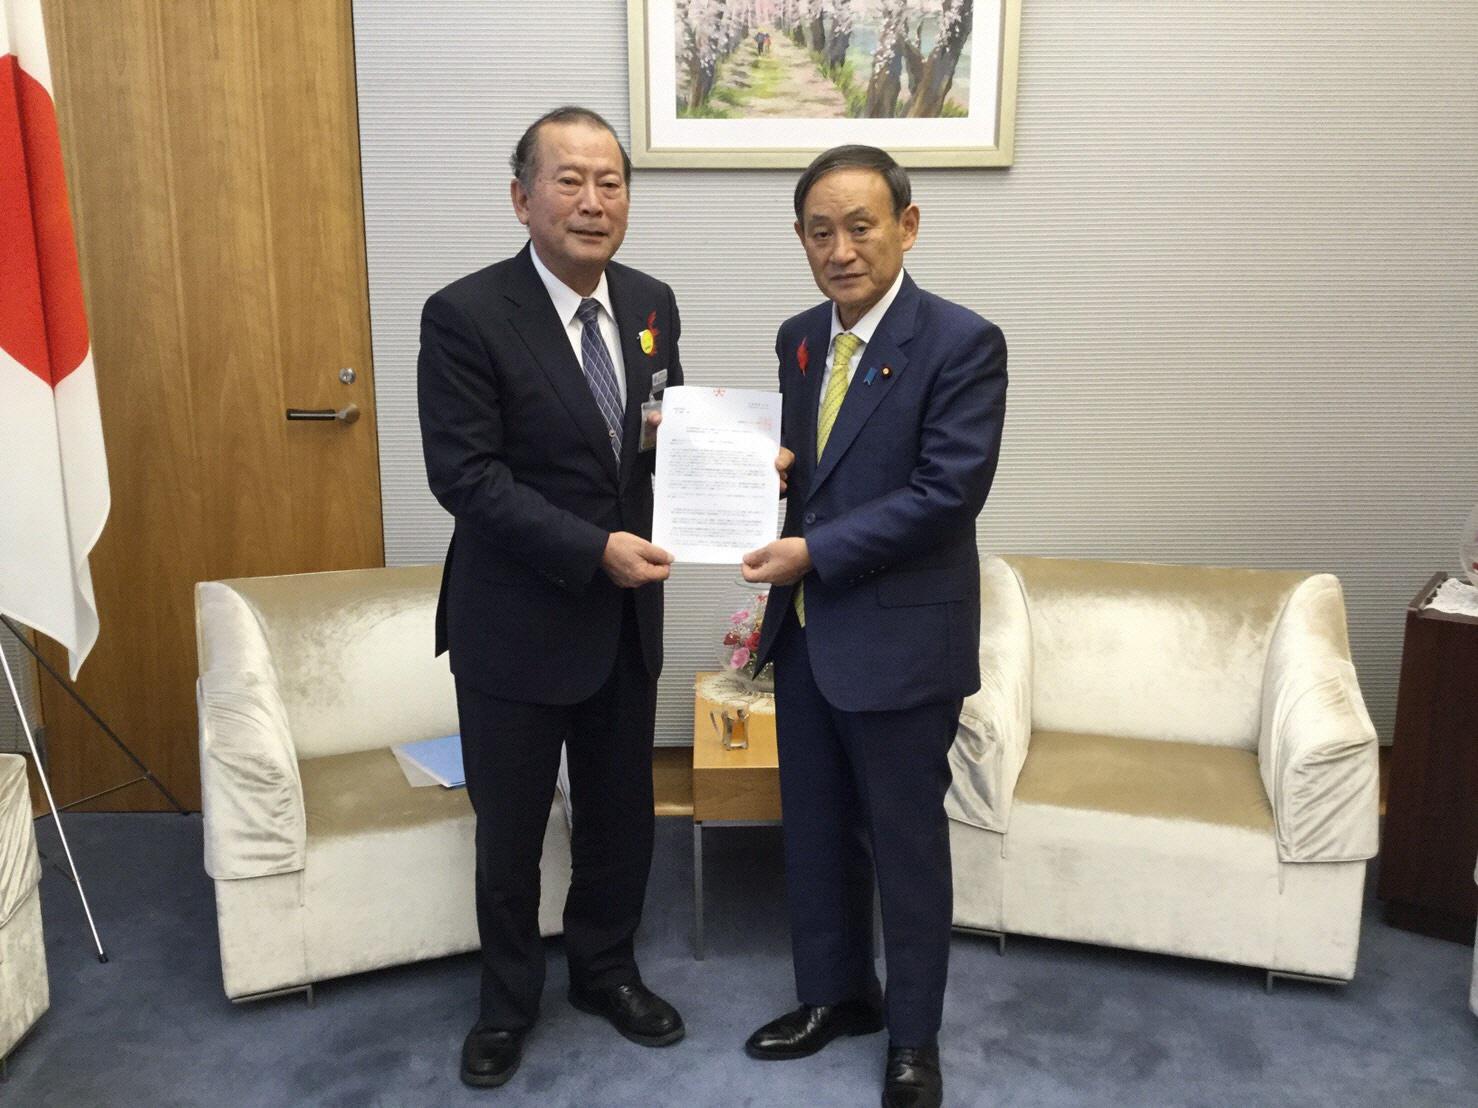 市長と菅官房長官が一緒に書類を持ちカメラの方に向けている写真